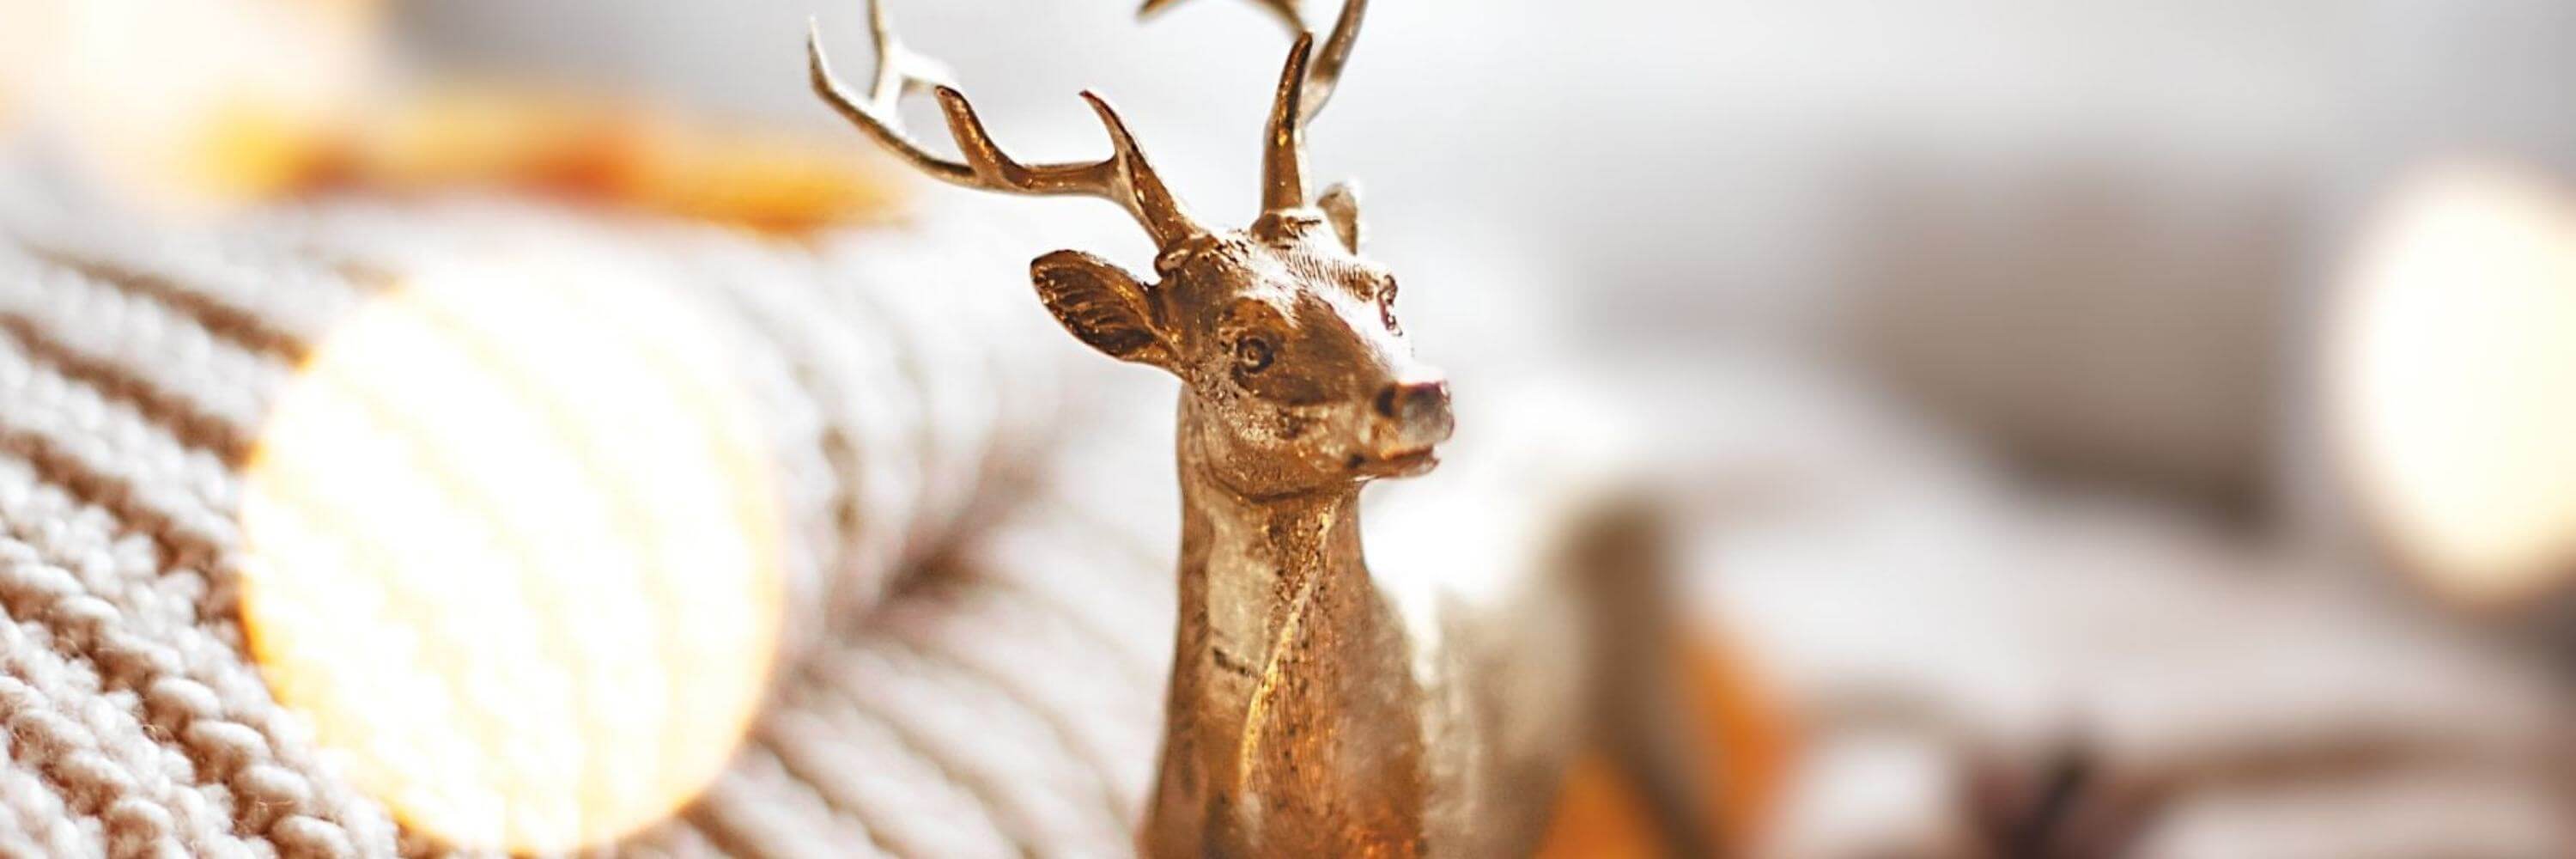 Bronze deer figurine